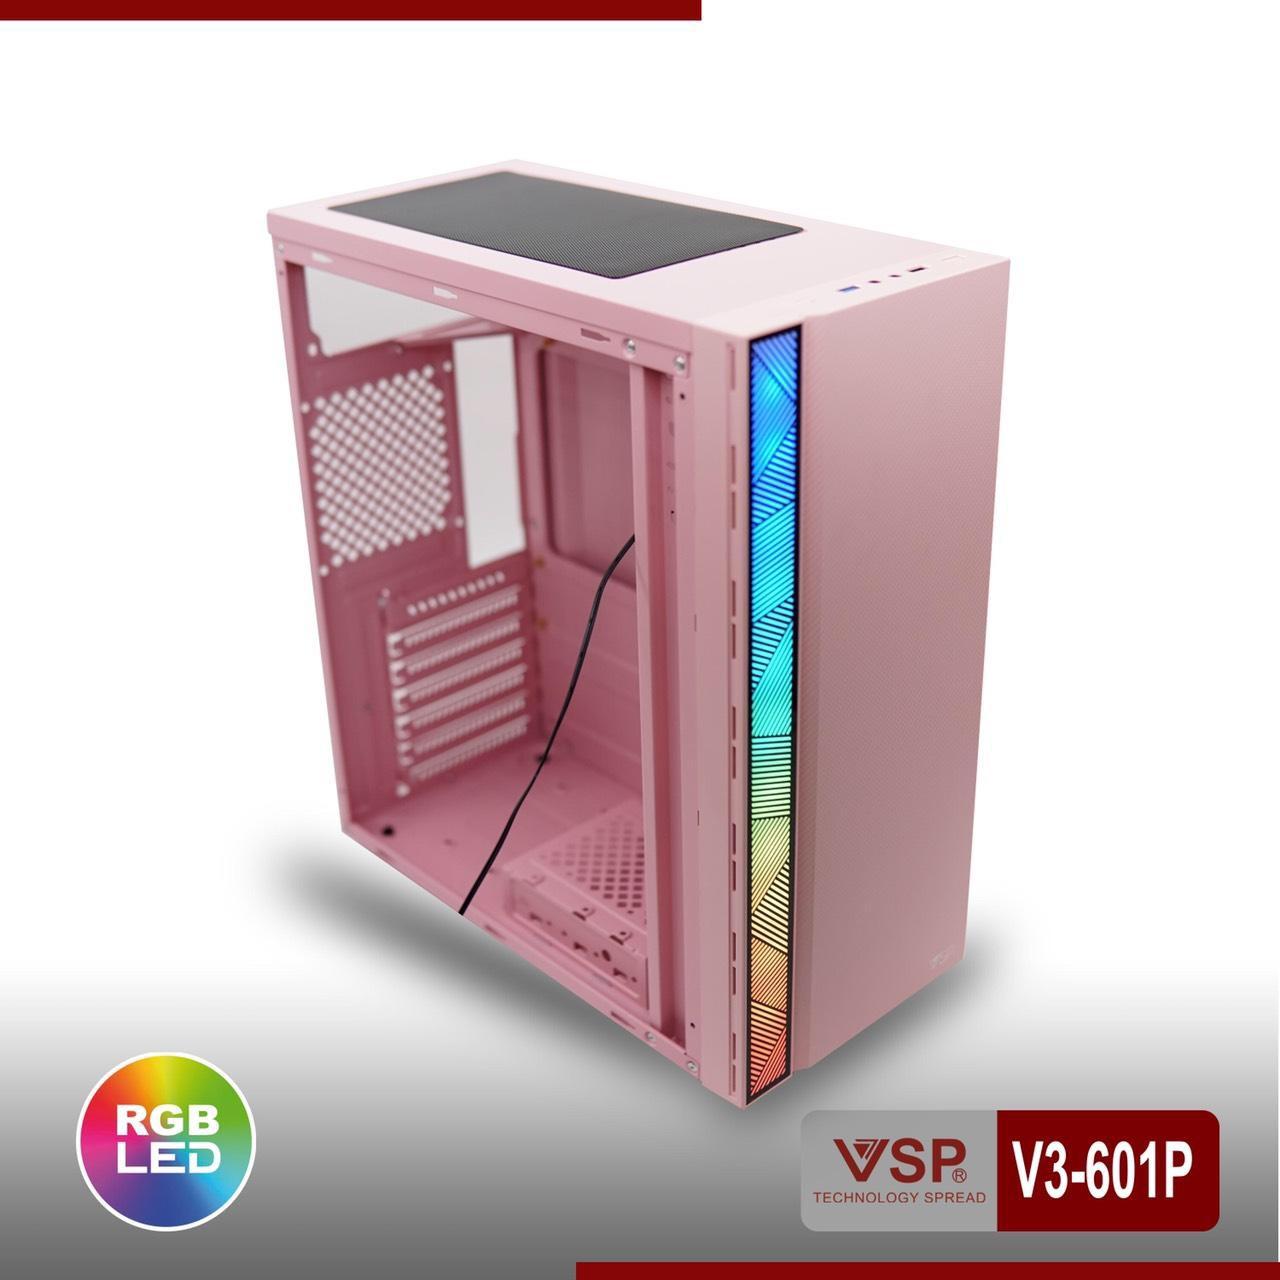 Case Máy tính V3-601P có sẵn Led Rgb màu hồng kính cường lực, hông trong suốt cực đẹp hàng cao cấp, Vỏ Thùng máy tính mẫu mới bán chạy, Vỏ case cho máy tính siêu sang đẳng cấp